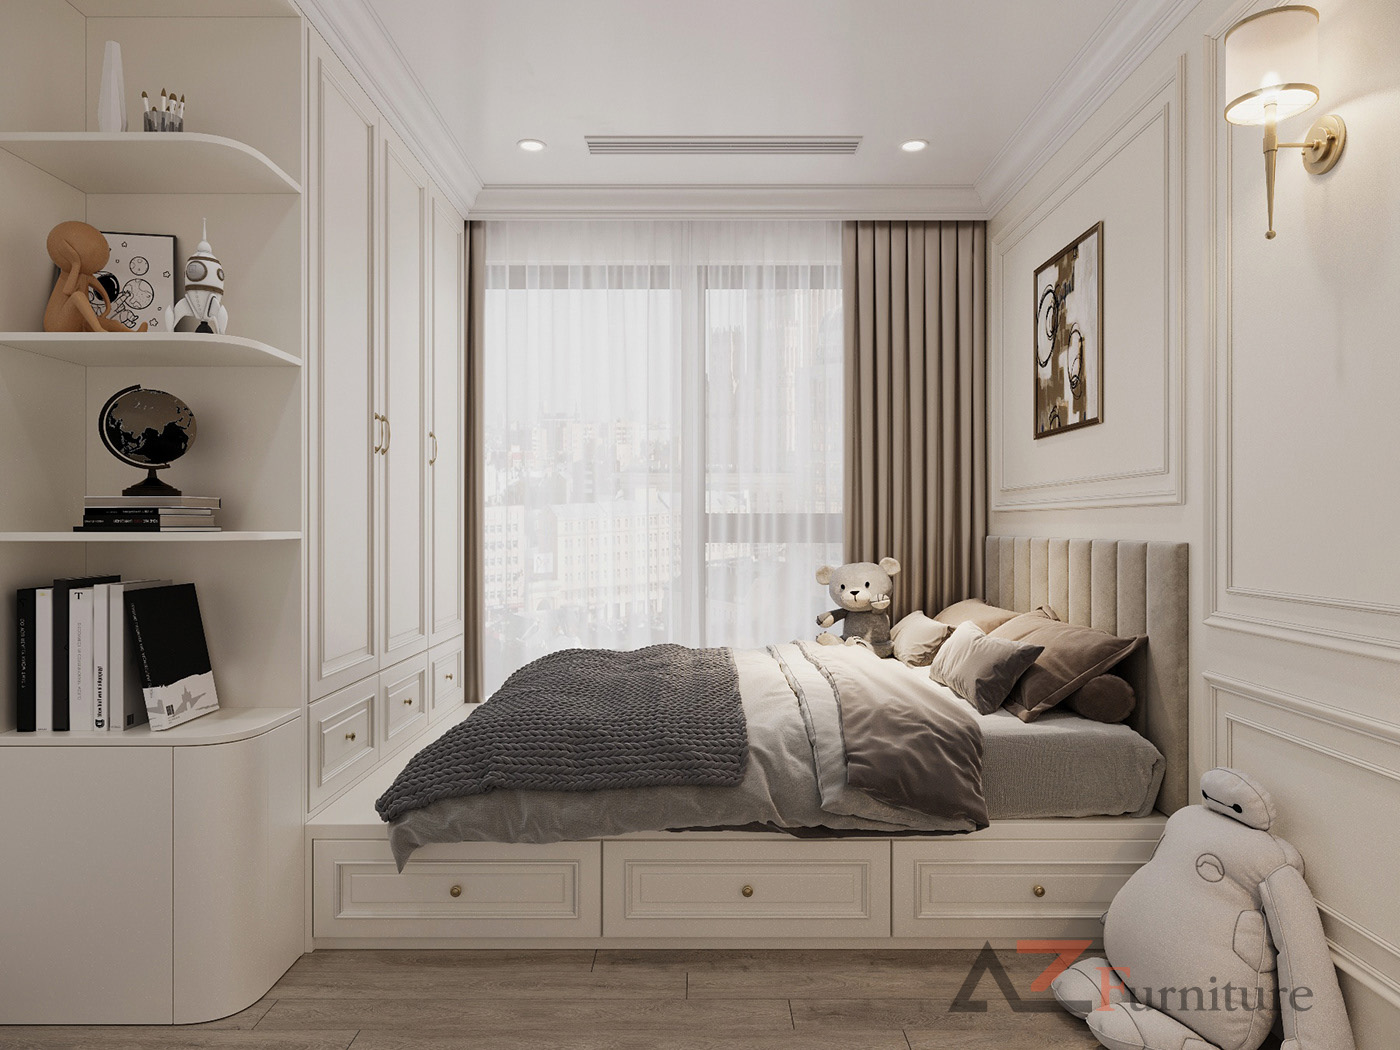 Nội thất phòng ngủ nhỏ hiện đại có thiết kế đa dạng